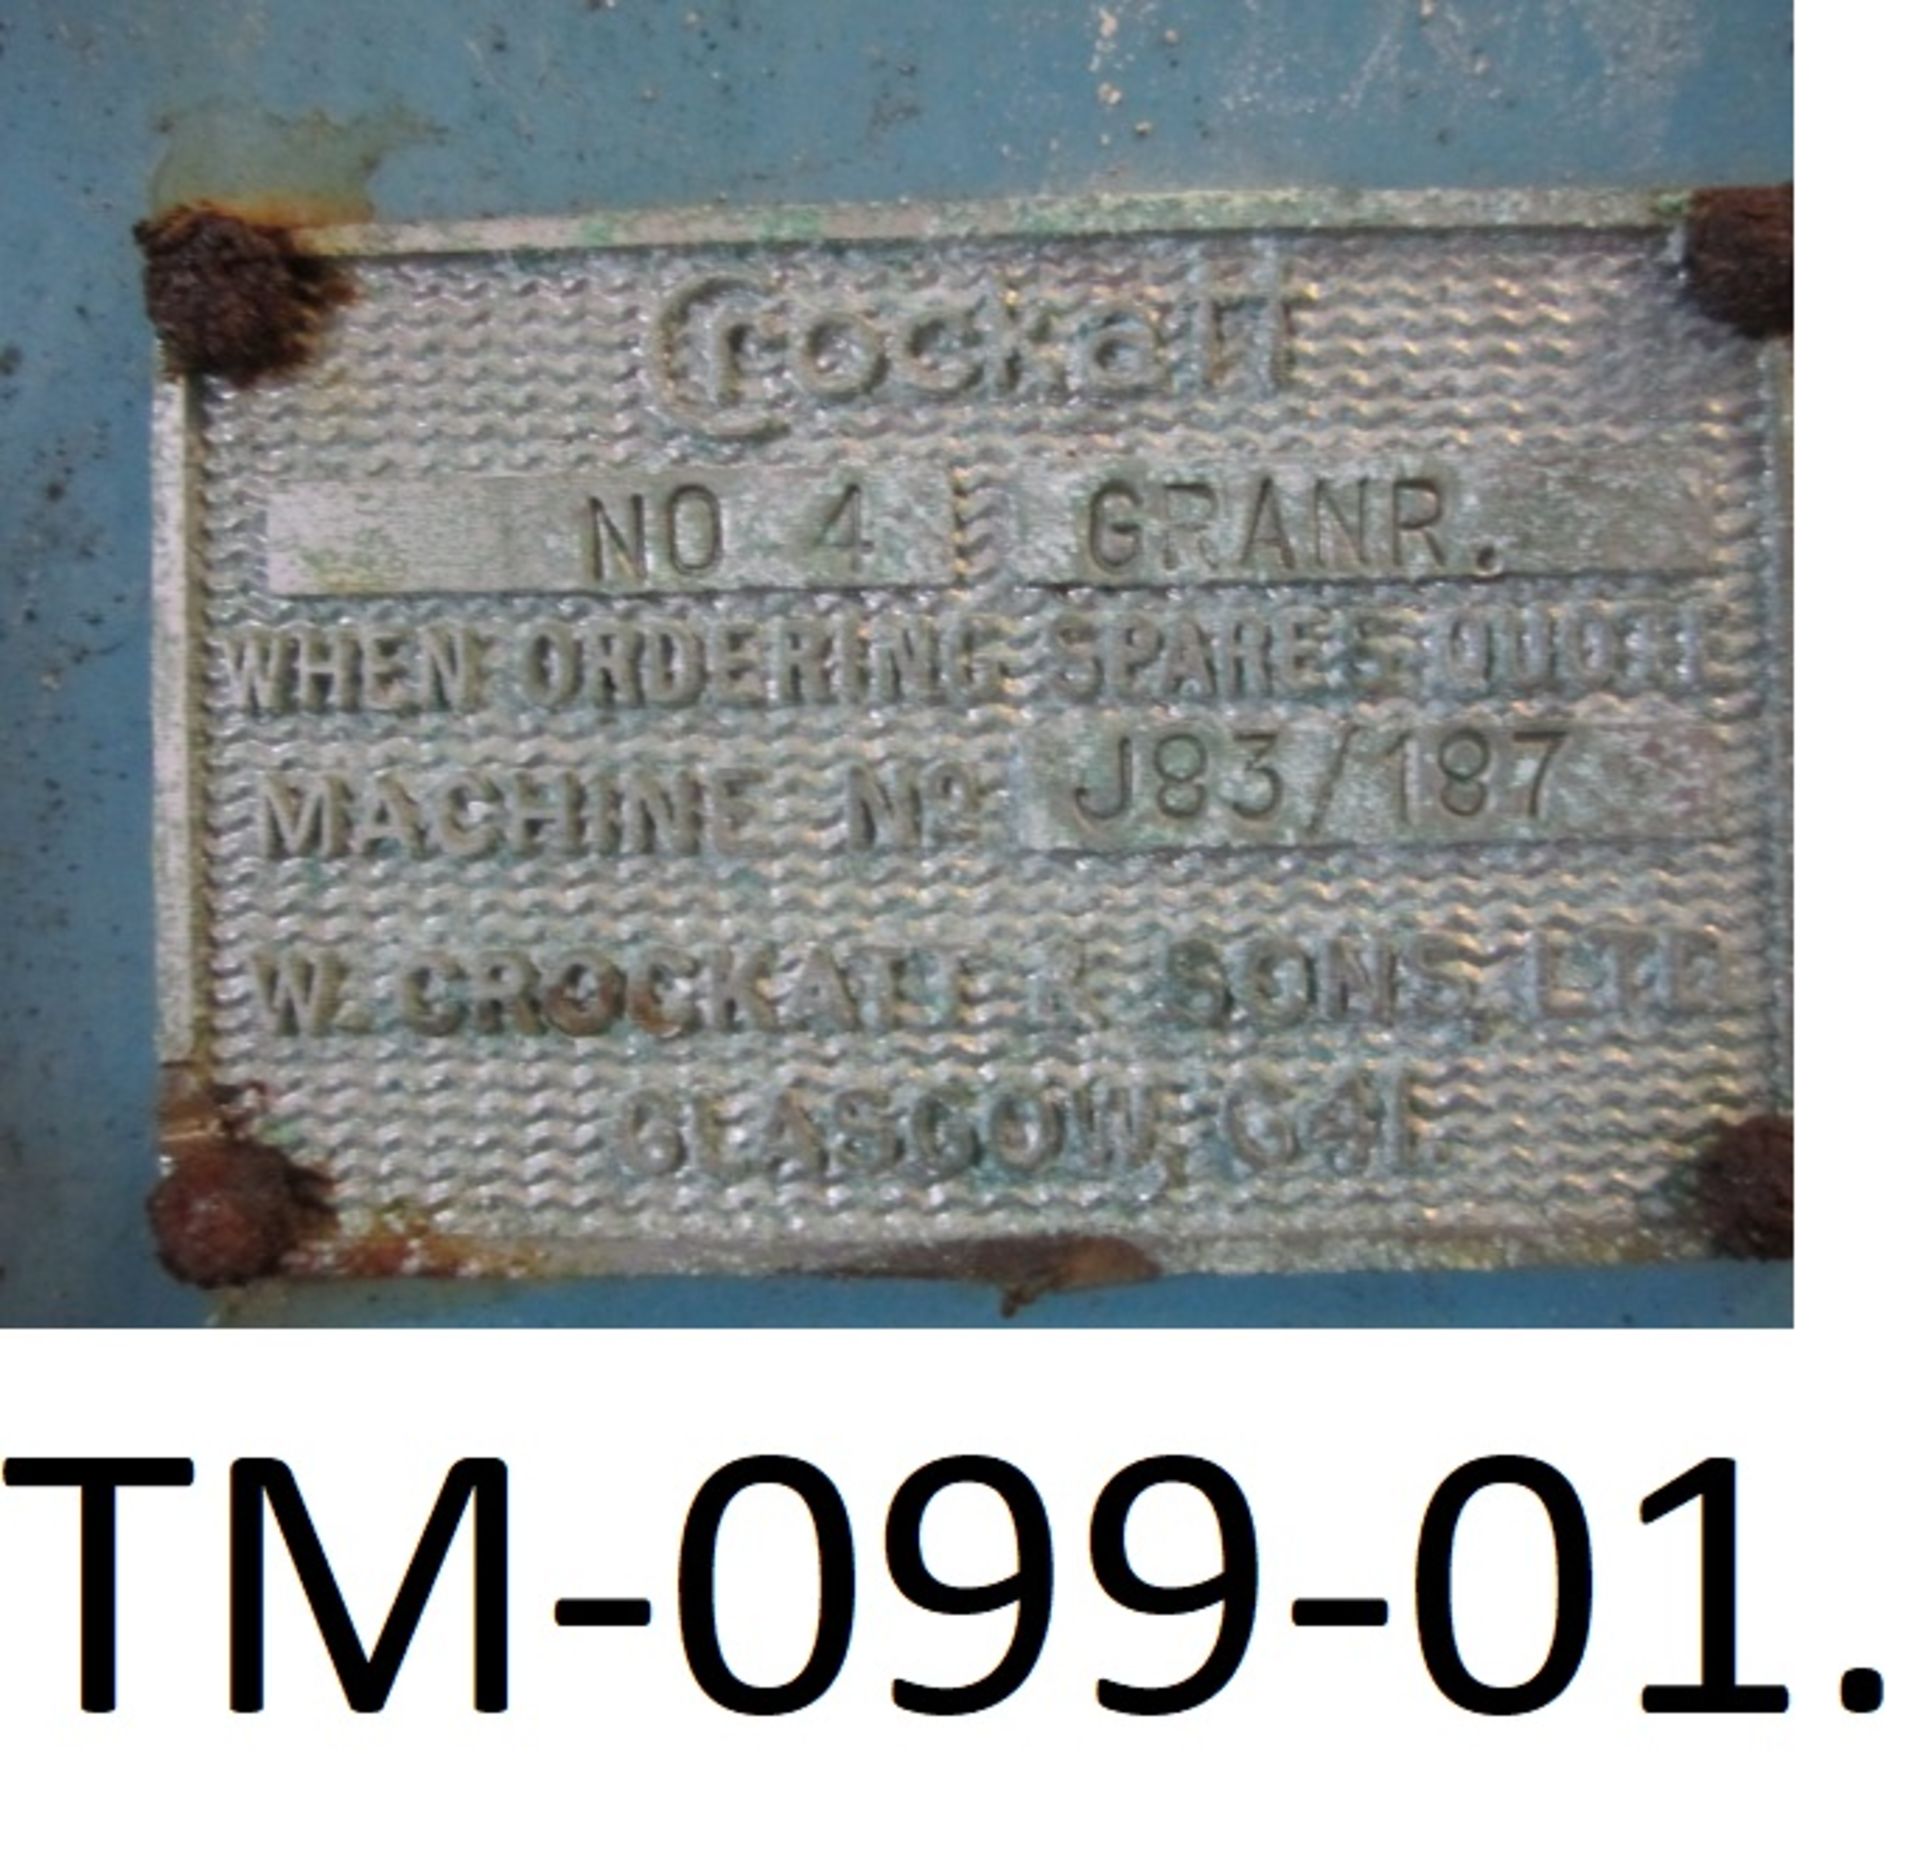 Jackson Crockett No 4 Granulator (for spares), fre - Image 2 of 3